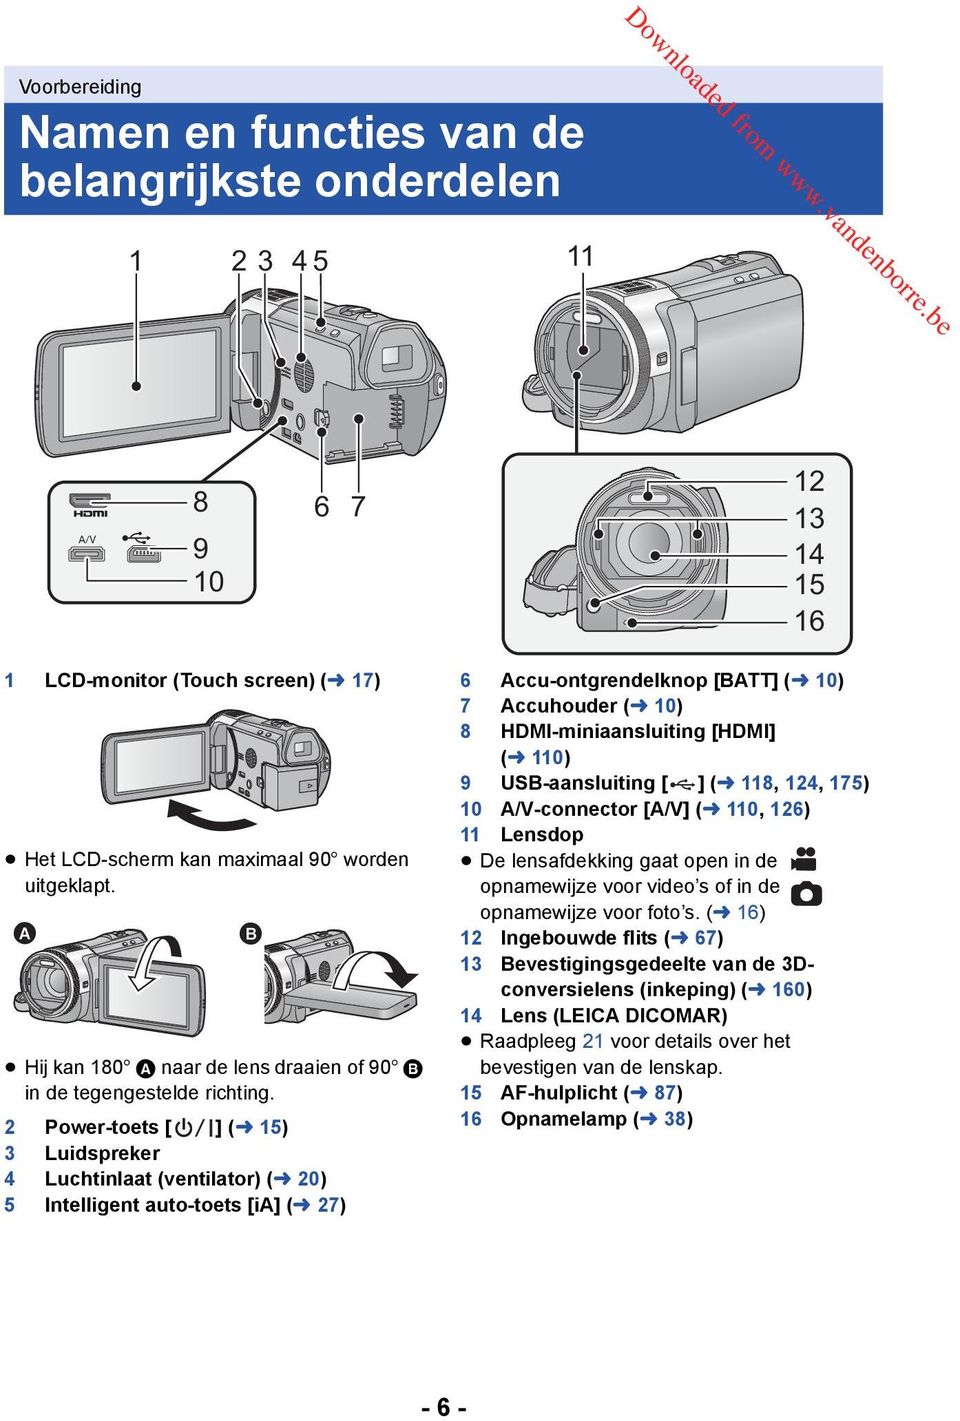 2 Power-toets [ ] (l 15) 3 Luidspreker 4 Luchtinlaat (ventilator) (l 20) 5 Intelligent auto-toets [ia] (l 27) 6 Accu-ontgrendelknop [BATT] (l 10) 7 Accuhouder (l 10) 8 HDMI-miniaansluiting [HDMI] (l